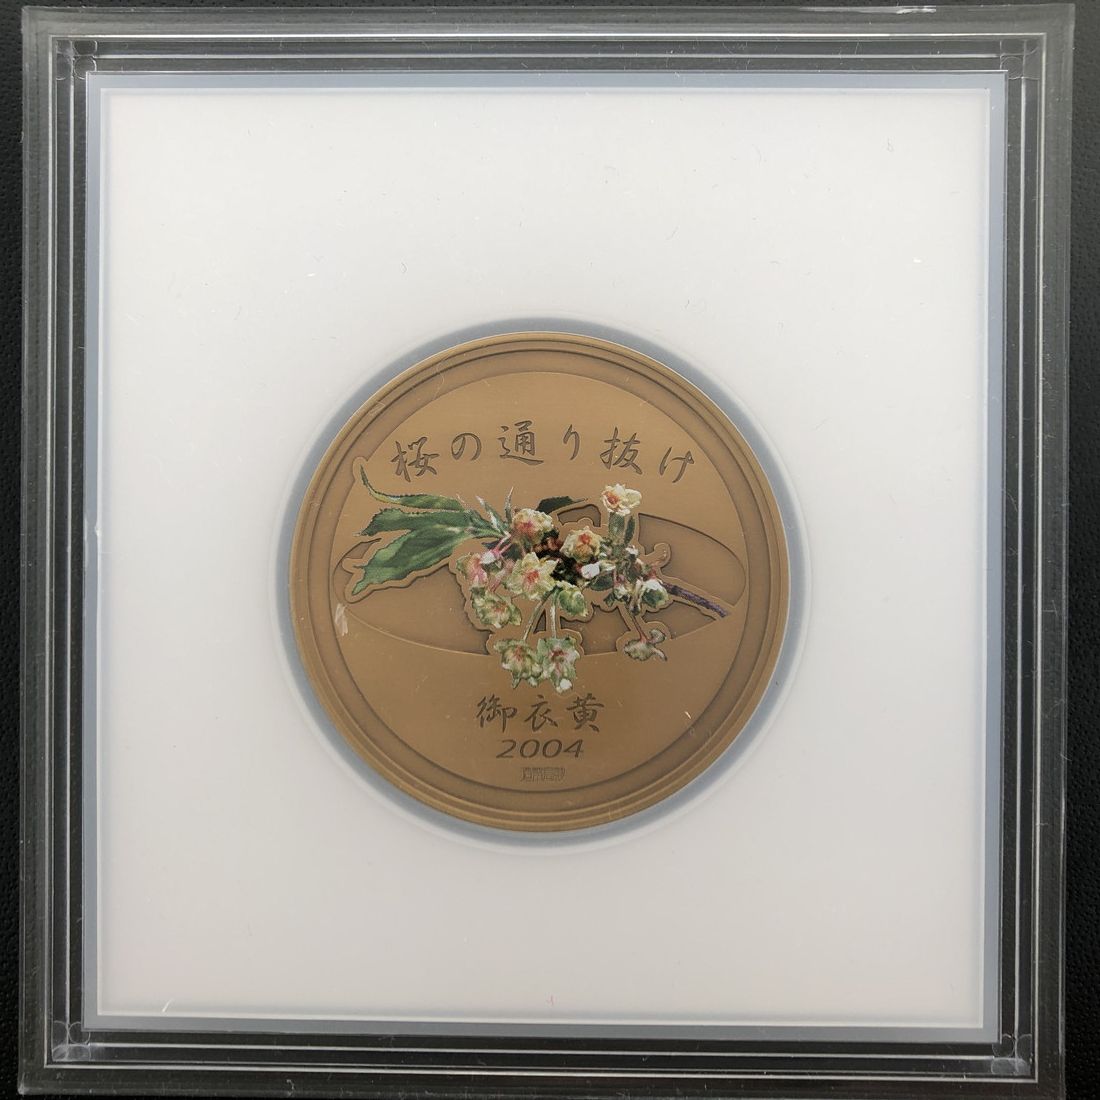 楽天市場】平成16年 桜の通り抜け記念 銅メダル『御衣黄』 造幣局 2004